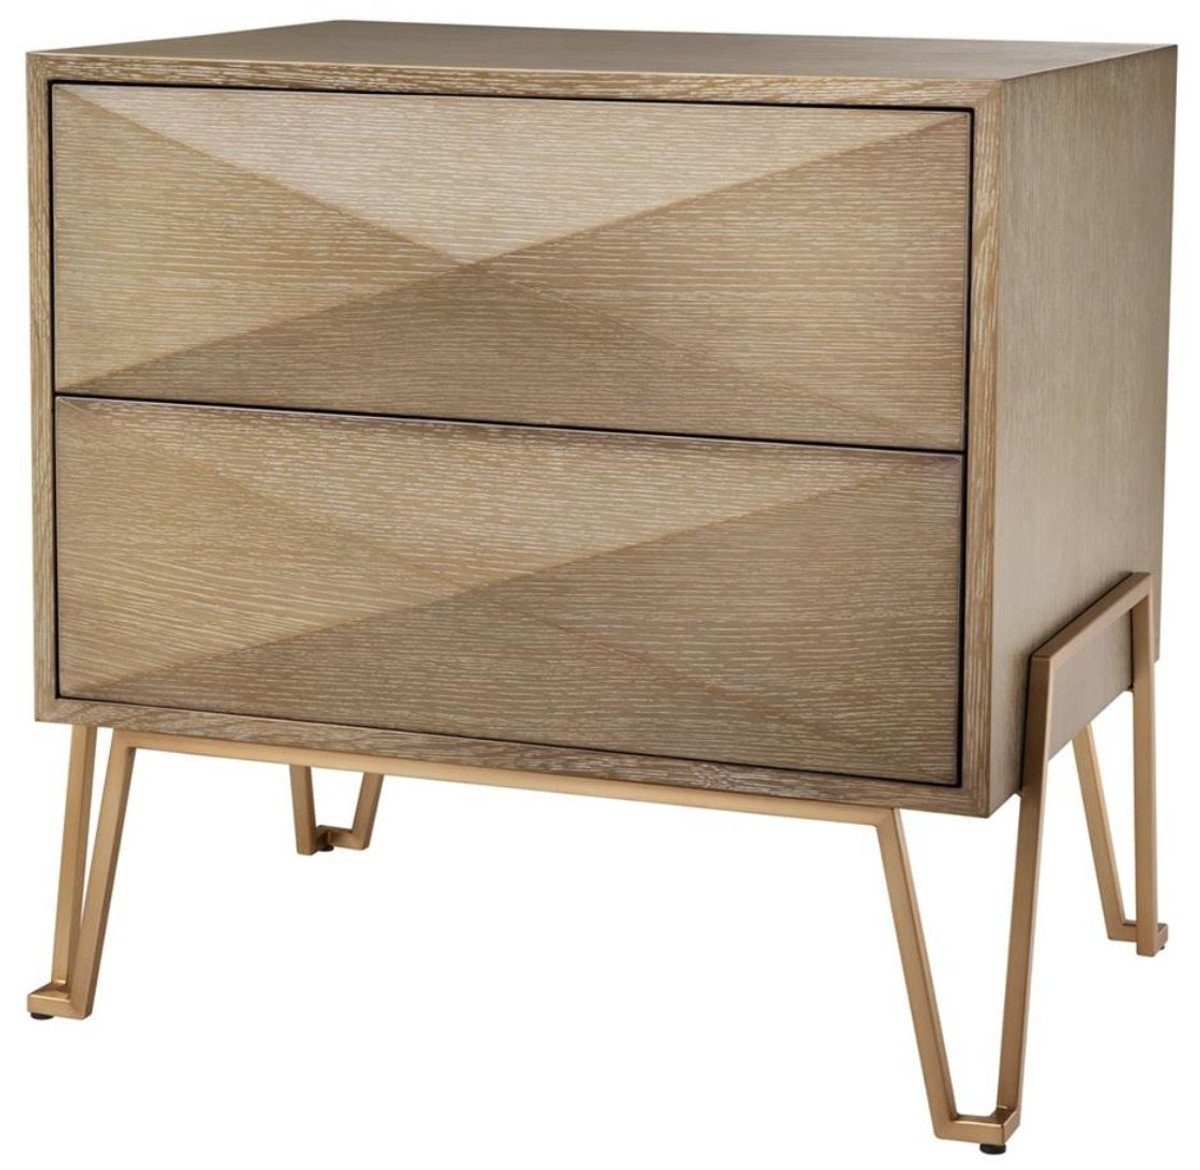 Casa Padrino Beistelltisch Luxus Nachttisch mit 2 Schubladen Braun / Messing 62,5 x 49 x H. 60 cm - Luxus Qualität